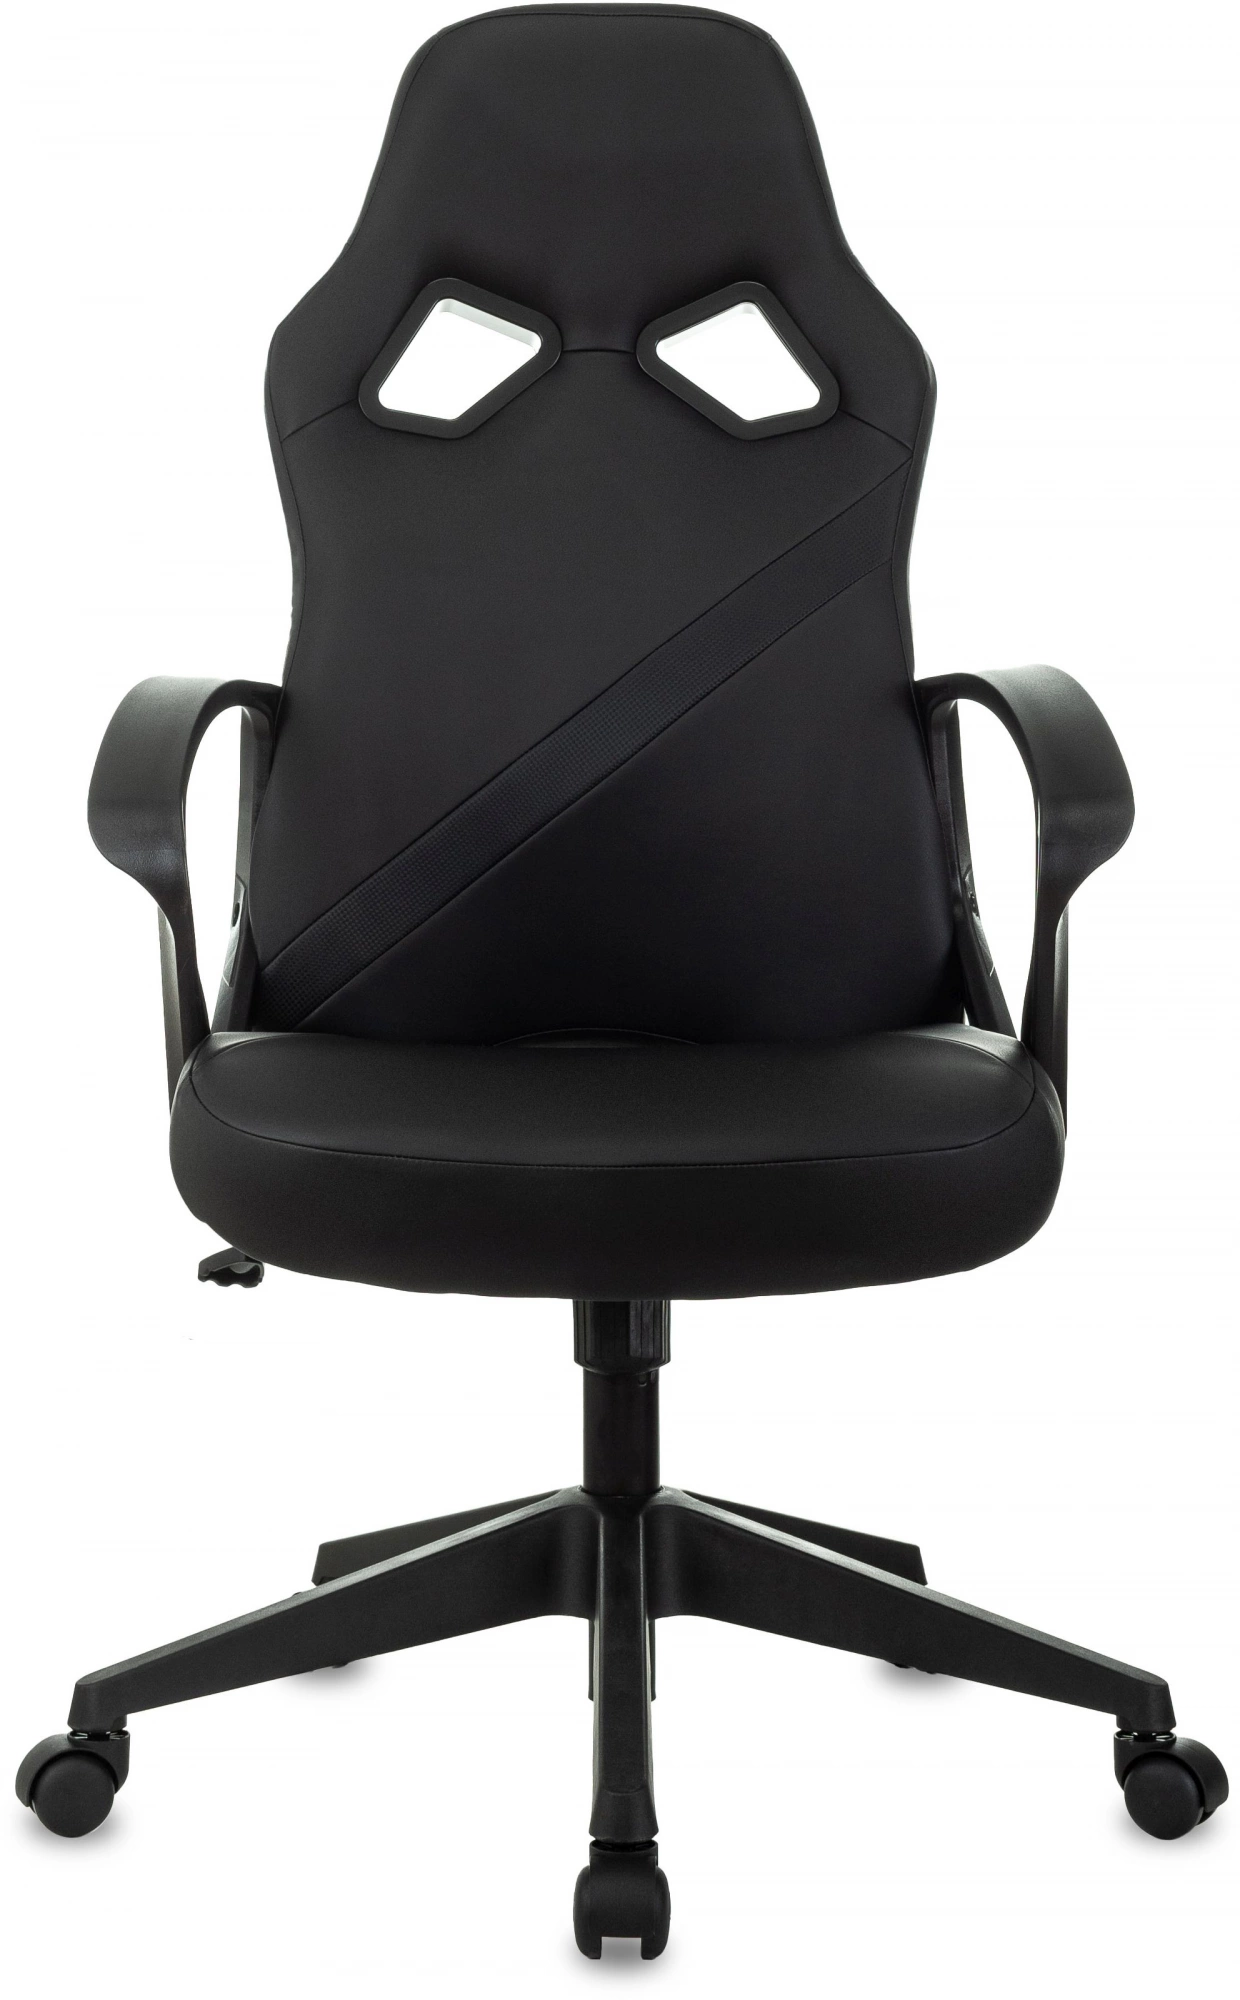 Кресло игровое Zombie 300 черный эко.кожа крестов. пластик